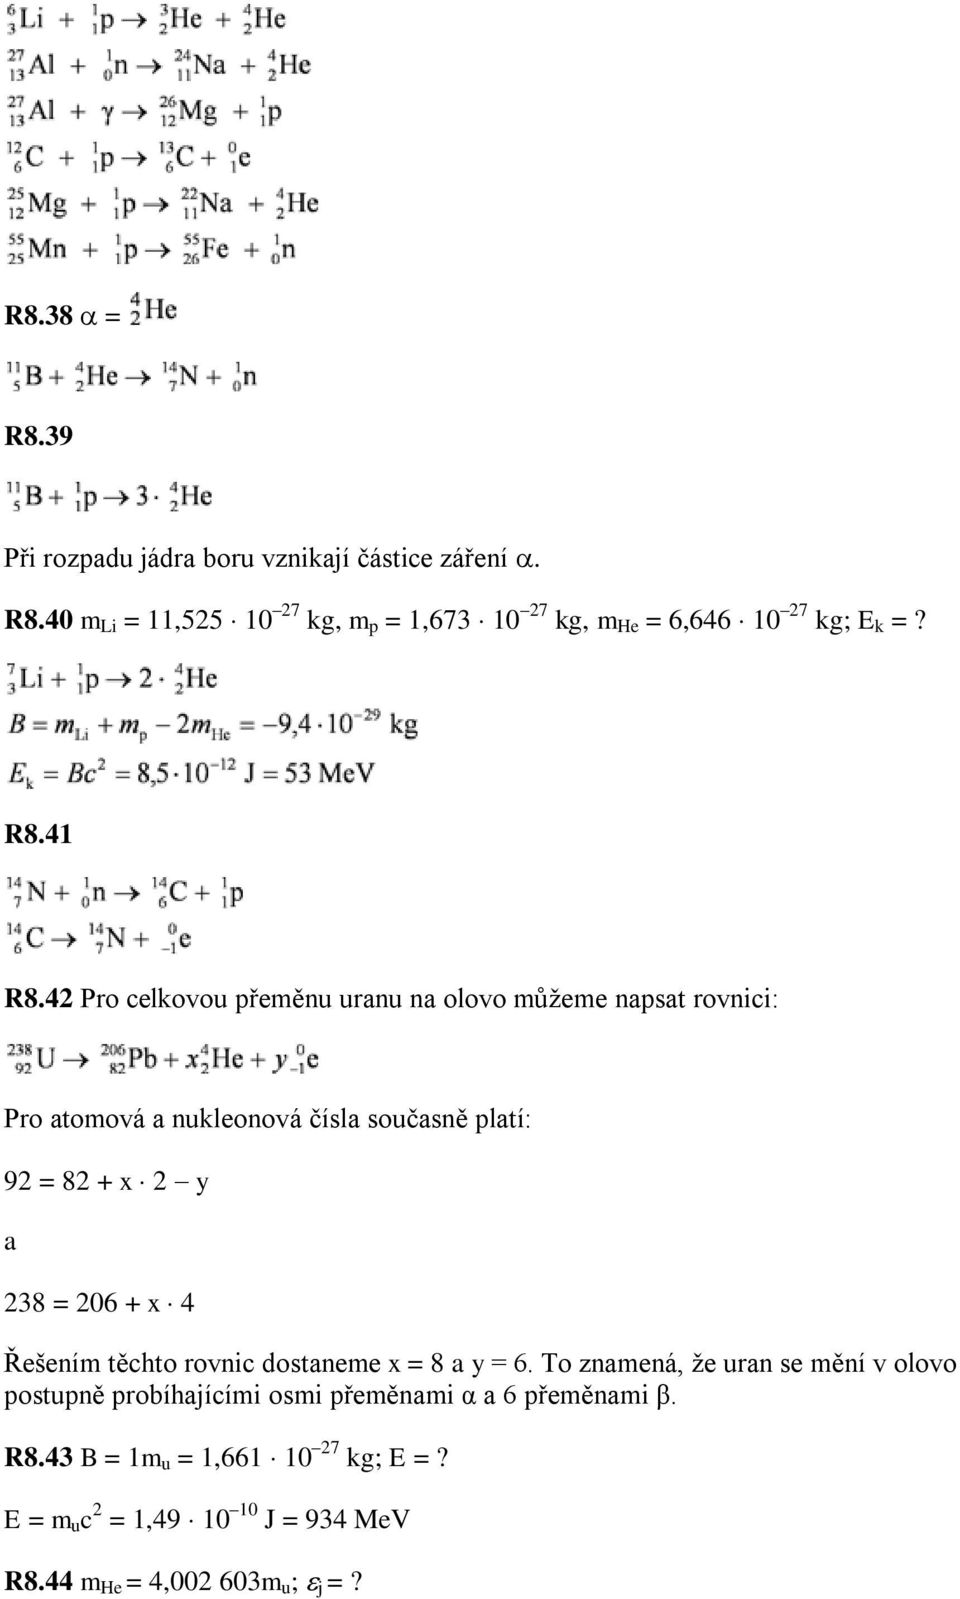 Datování sekundárních uranových minerálů metodou Termálně ionizační hmotové Obecná rovnice přeměny alfa ( carnotit v pískovcích) často i v asociaci s jinými prvky (V, Cu, Pb).